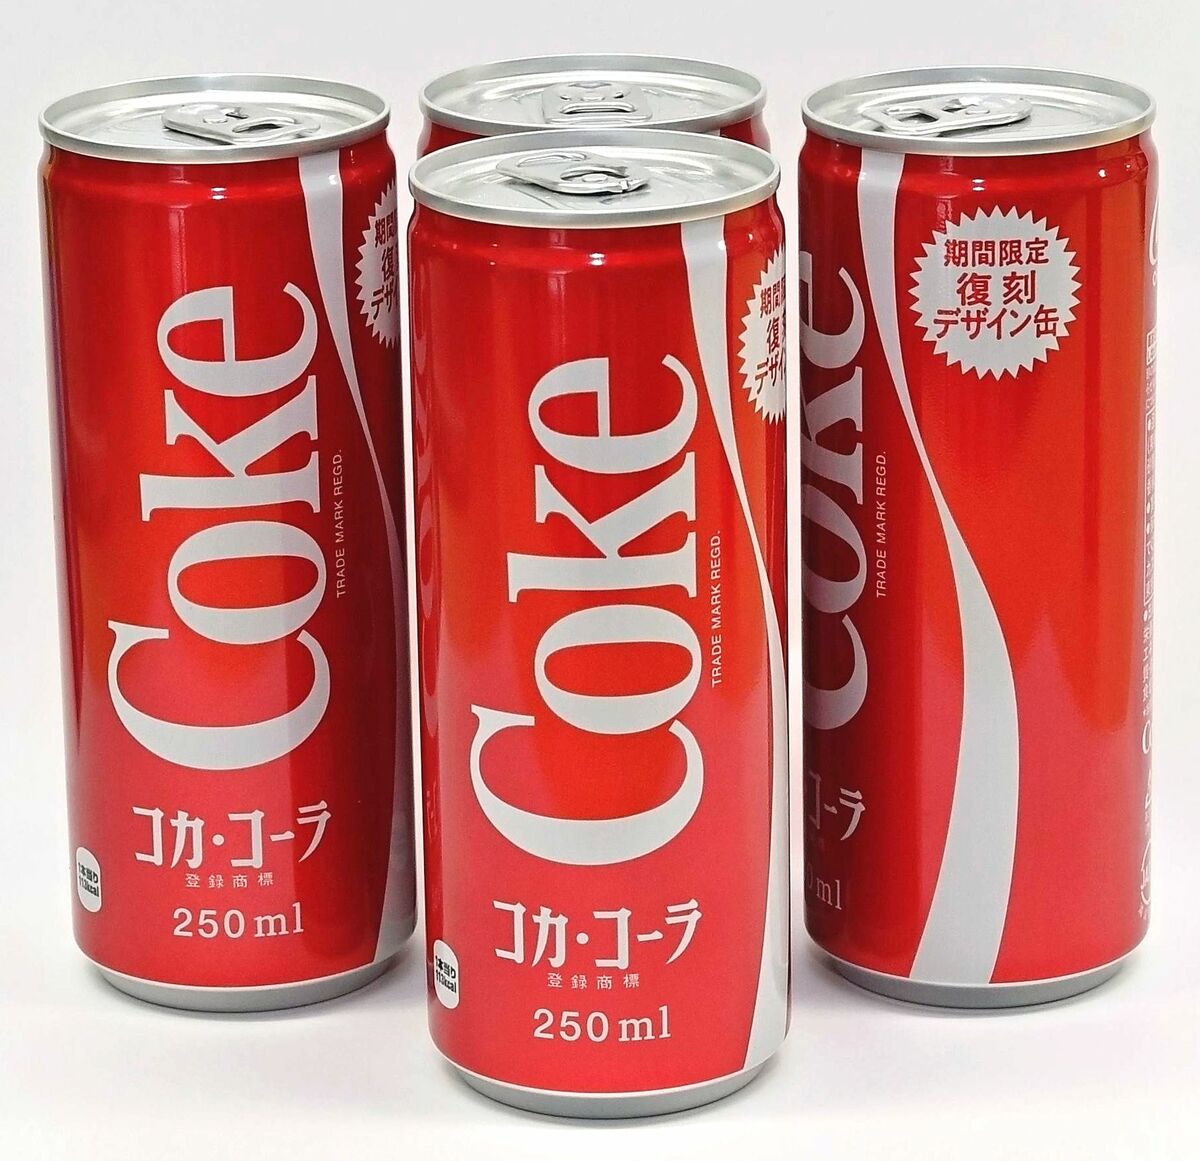 レトロな書体と深い赤色が特徴 コカ・コーラが復刻缶 沖縄限定、復帰